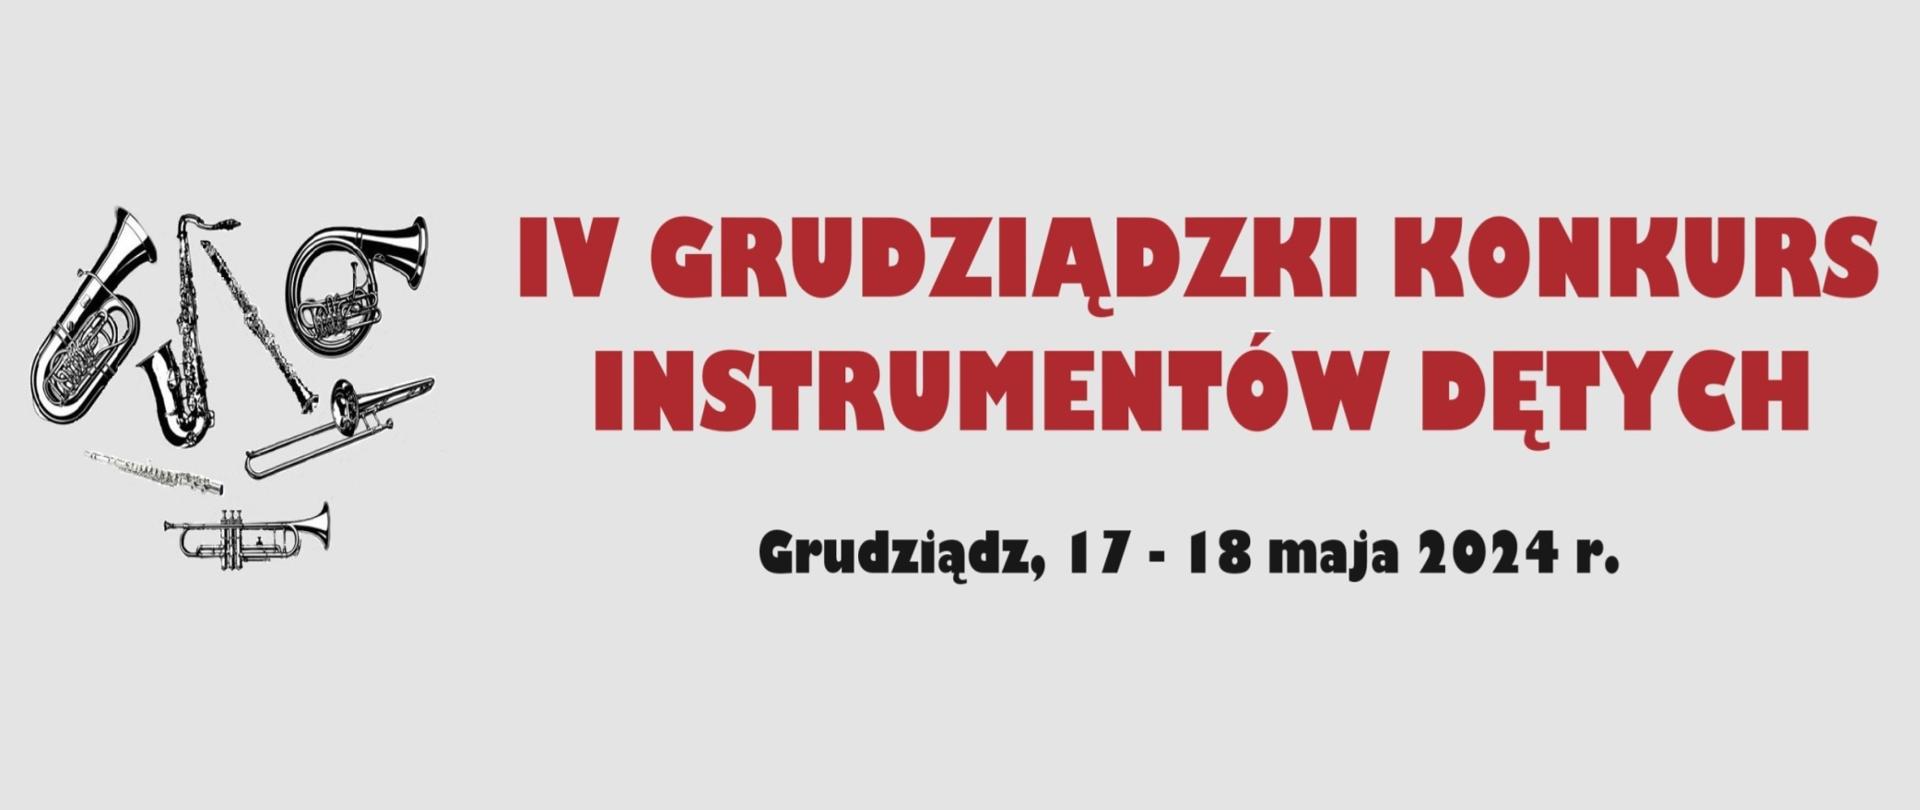 Logo konkursu - grafiki przedstawiające instrumenty dęte i napis IV GRUDZIĄDZKI KONKURS INSTRUMENTÓW DĘTYCH Grudziądz, 17 - 18 maja 2024 r.